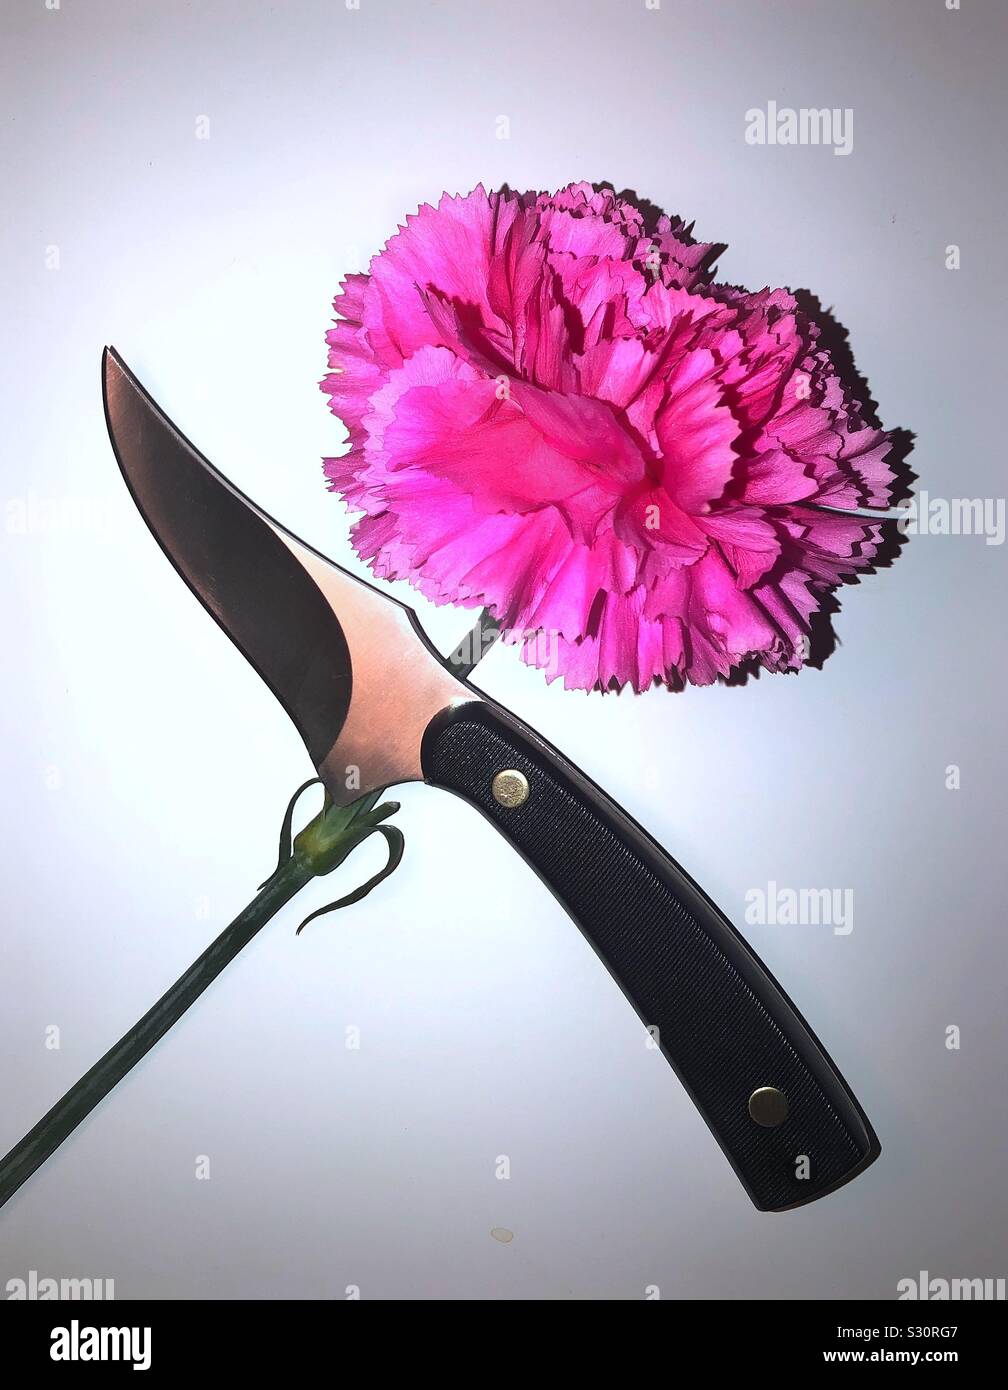 Ein Messer und ein rosa Nelke Blume gekreuzt. Stockfoto